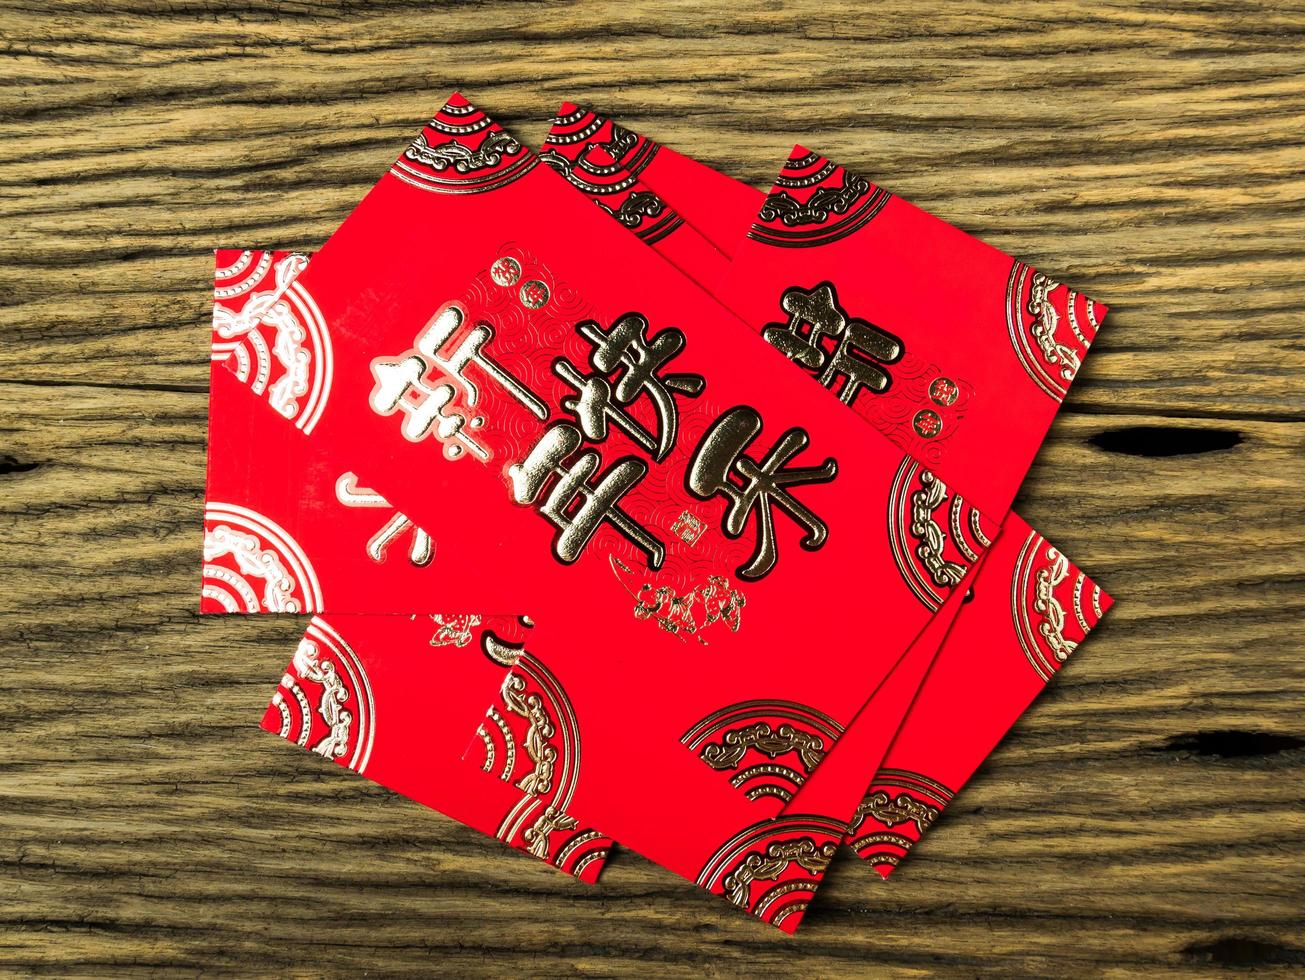 Sobre rojo sobre fondo de madera con febrero para regalo año nuevo chino. texto chino en el sobre que significa feliz año nuevo chino foto